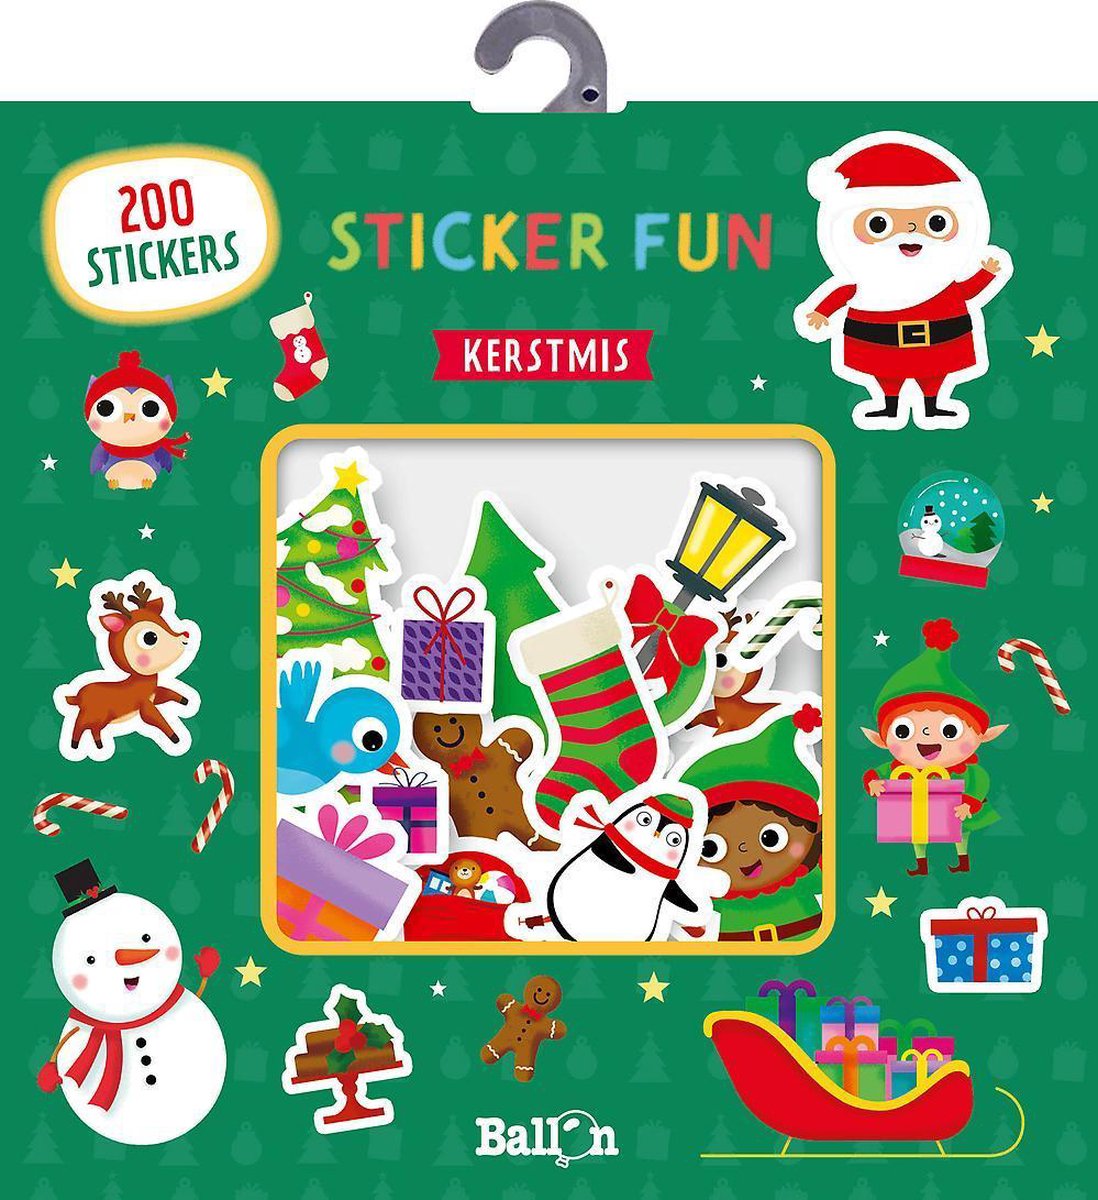 Sticker Fun - Kerstmis